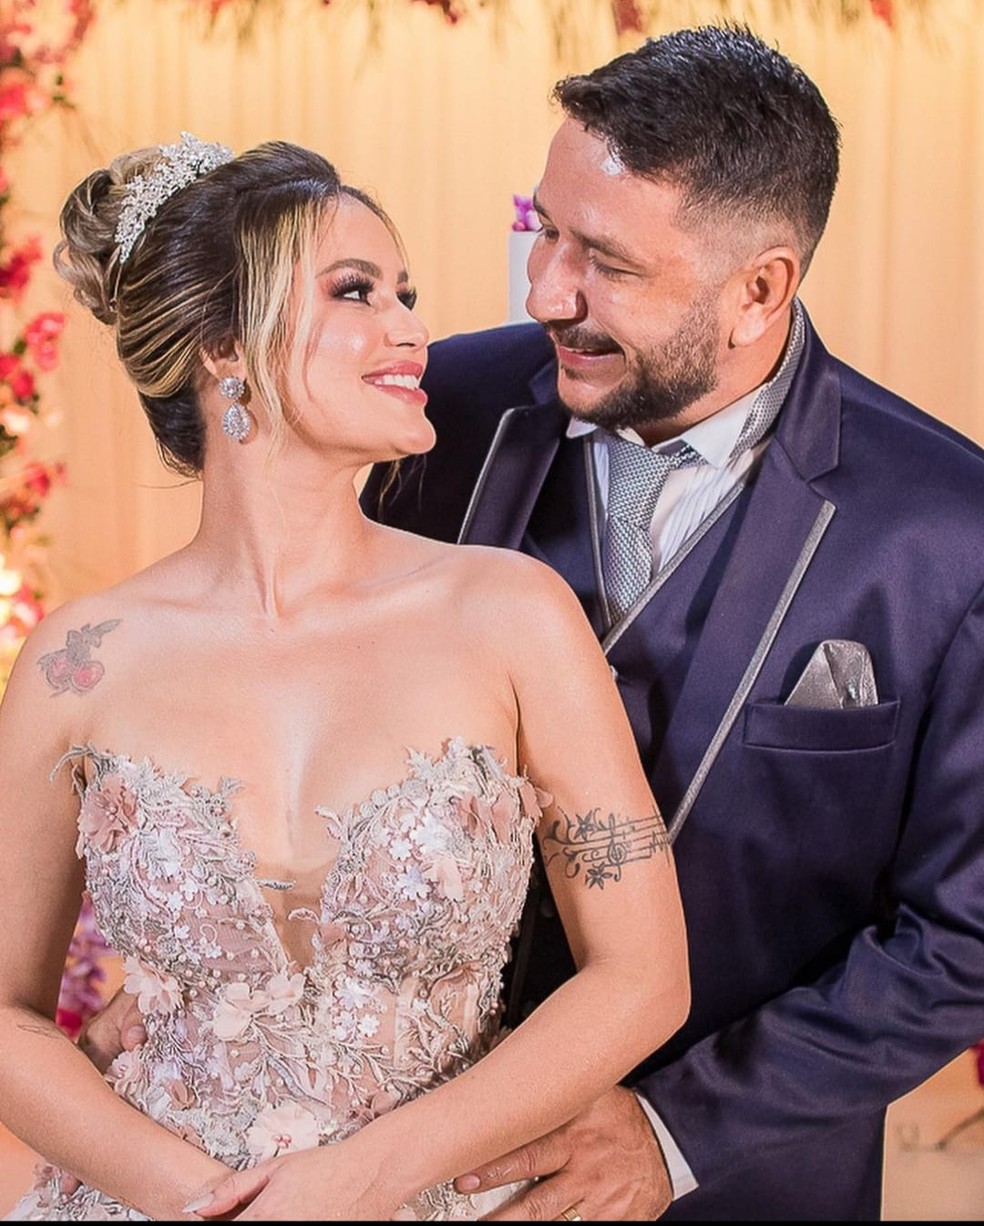 Tarcísio Araújo e Nayara Vilela se casaram em uma cerimônia luxuosa em março deste ano — Foto: Arquivo/Jozadarque Photoart AC